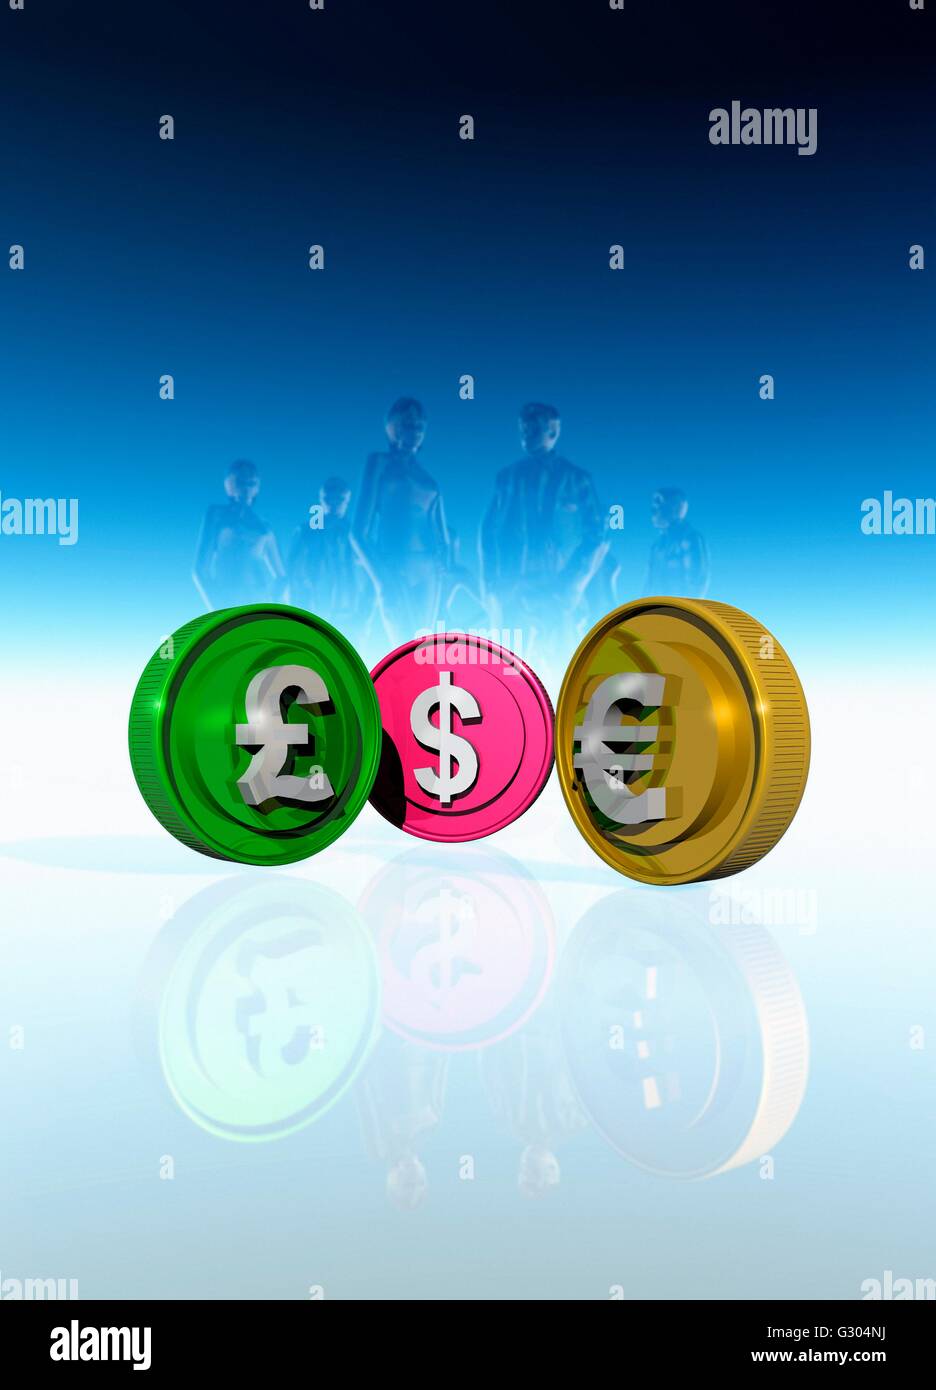 British pound, US dollar and Euro symbols, illustration. Stock Photo